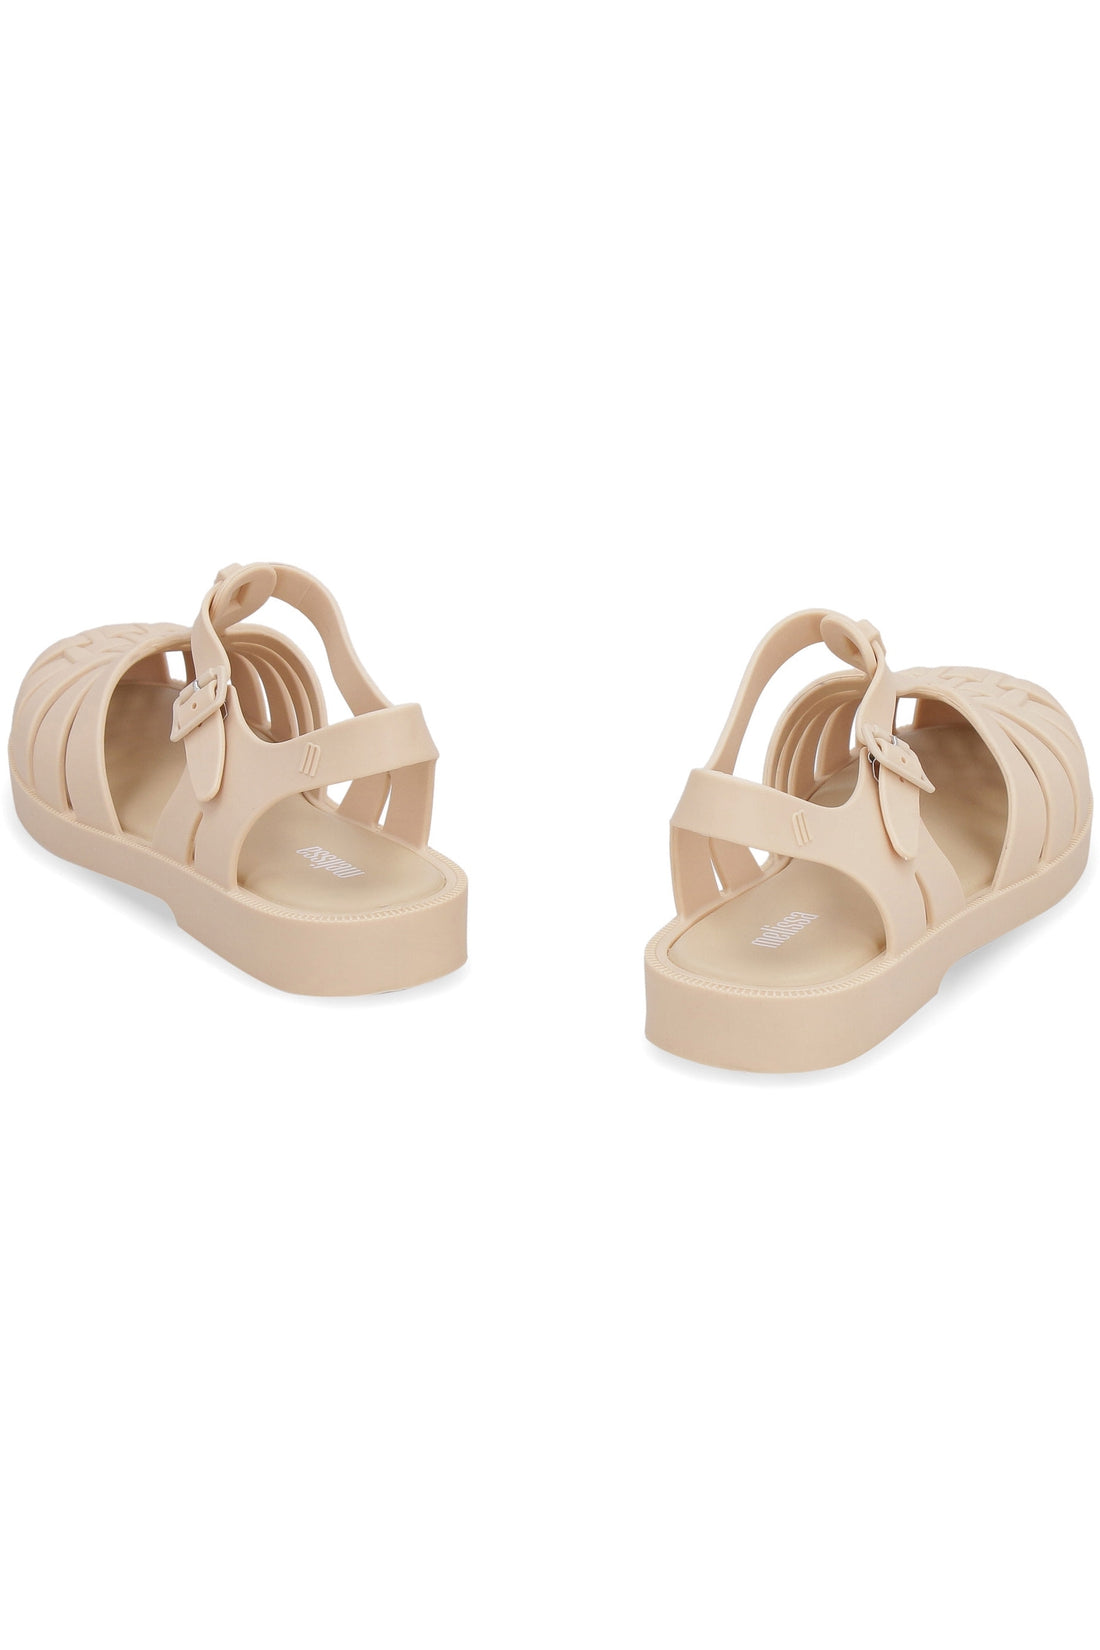 Piralo-OUTLET-SALE-Melissa Possession PVC sandals-ARCHIVIST